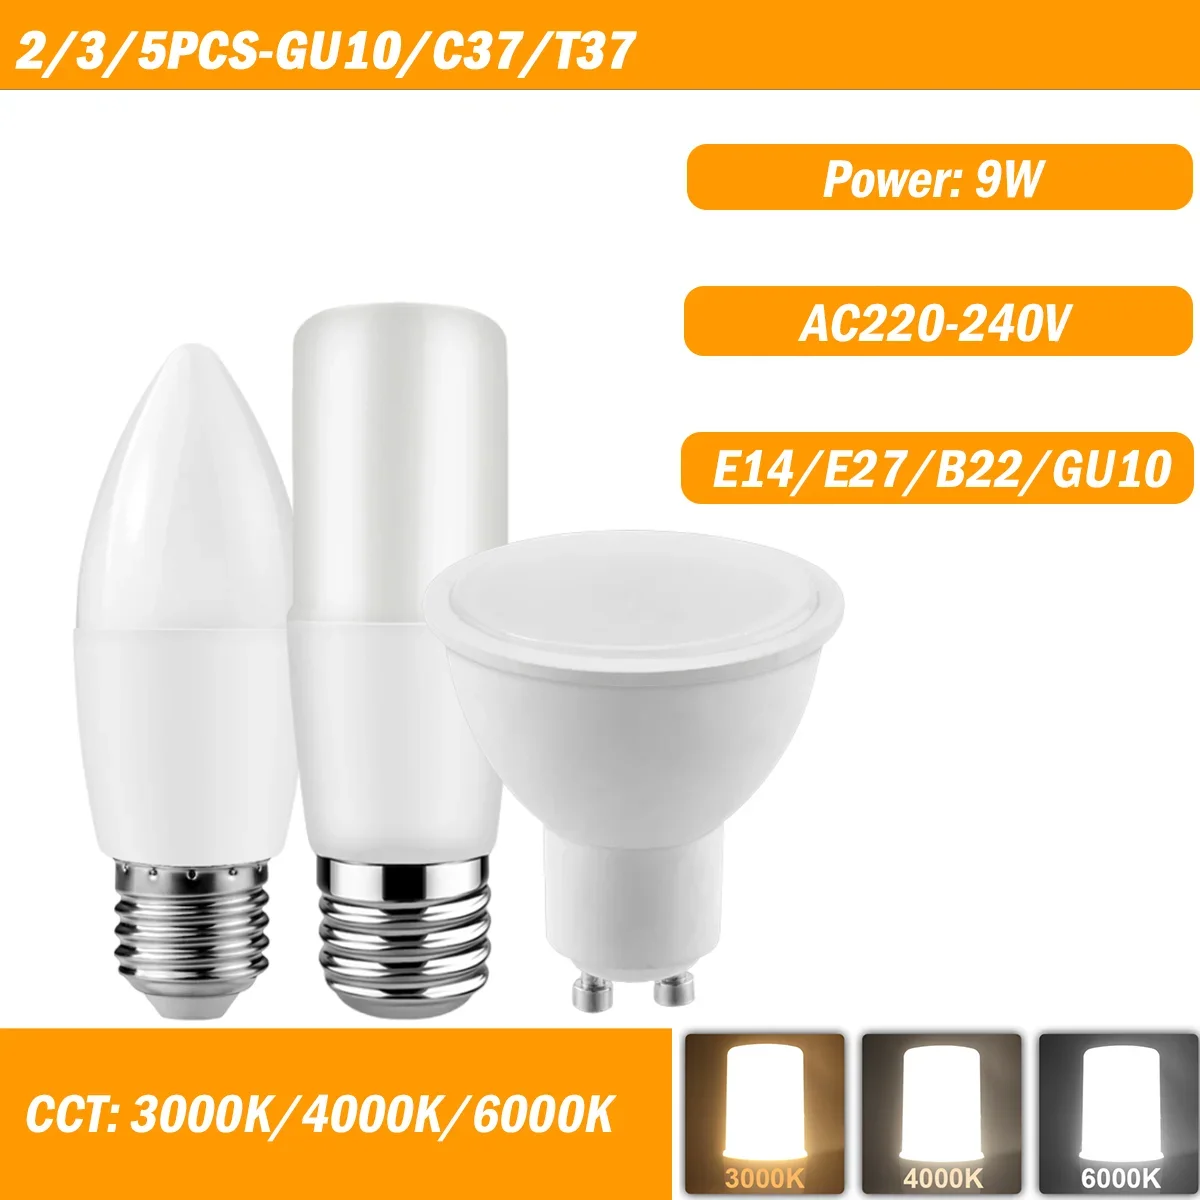 

2/3/5PCS C37/T37/GU10 9W AC220-240V E14/E27/B22/GU10 High Lumen No Flicker Warm White Light for Interiors Lighting